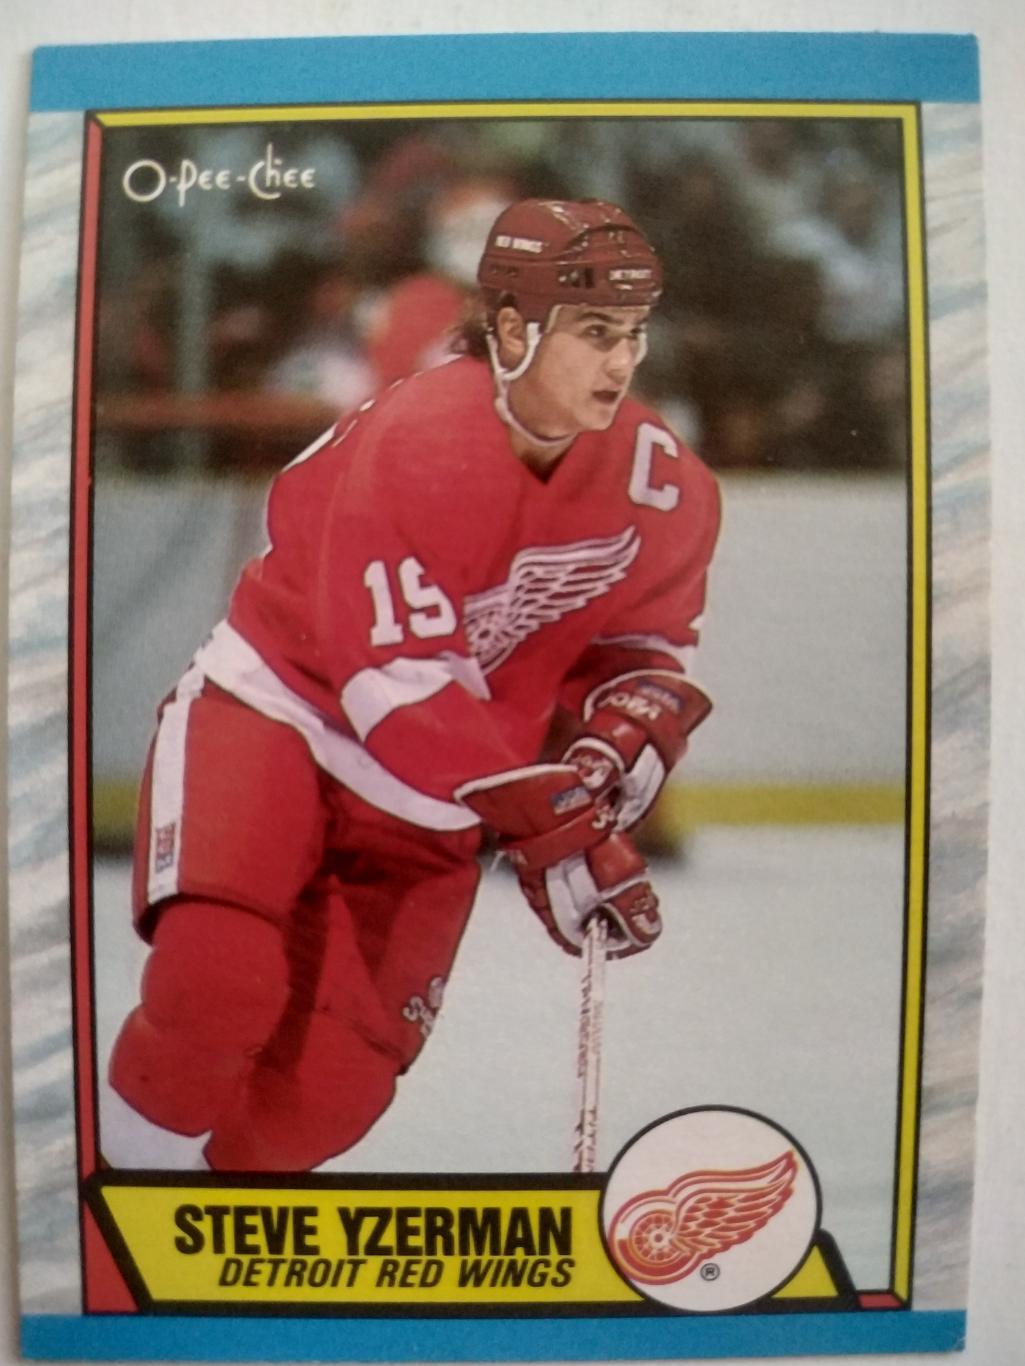 ХОККЕЙ КАРТОЧКА НХЛ O-PEE-CHEE 1989 NHL STEVE YZERMAN DETROIT RED WINGS #83